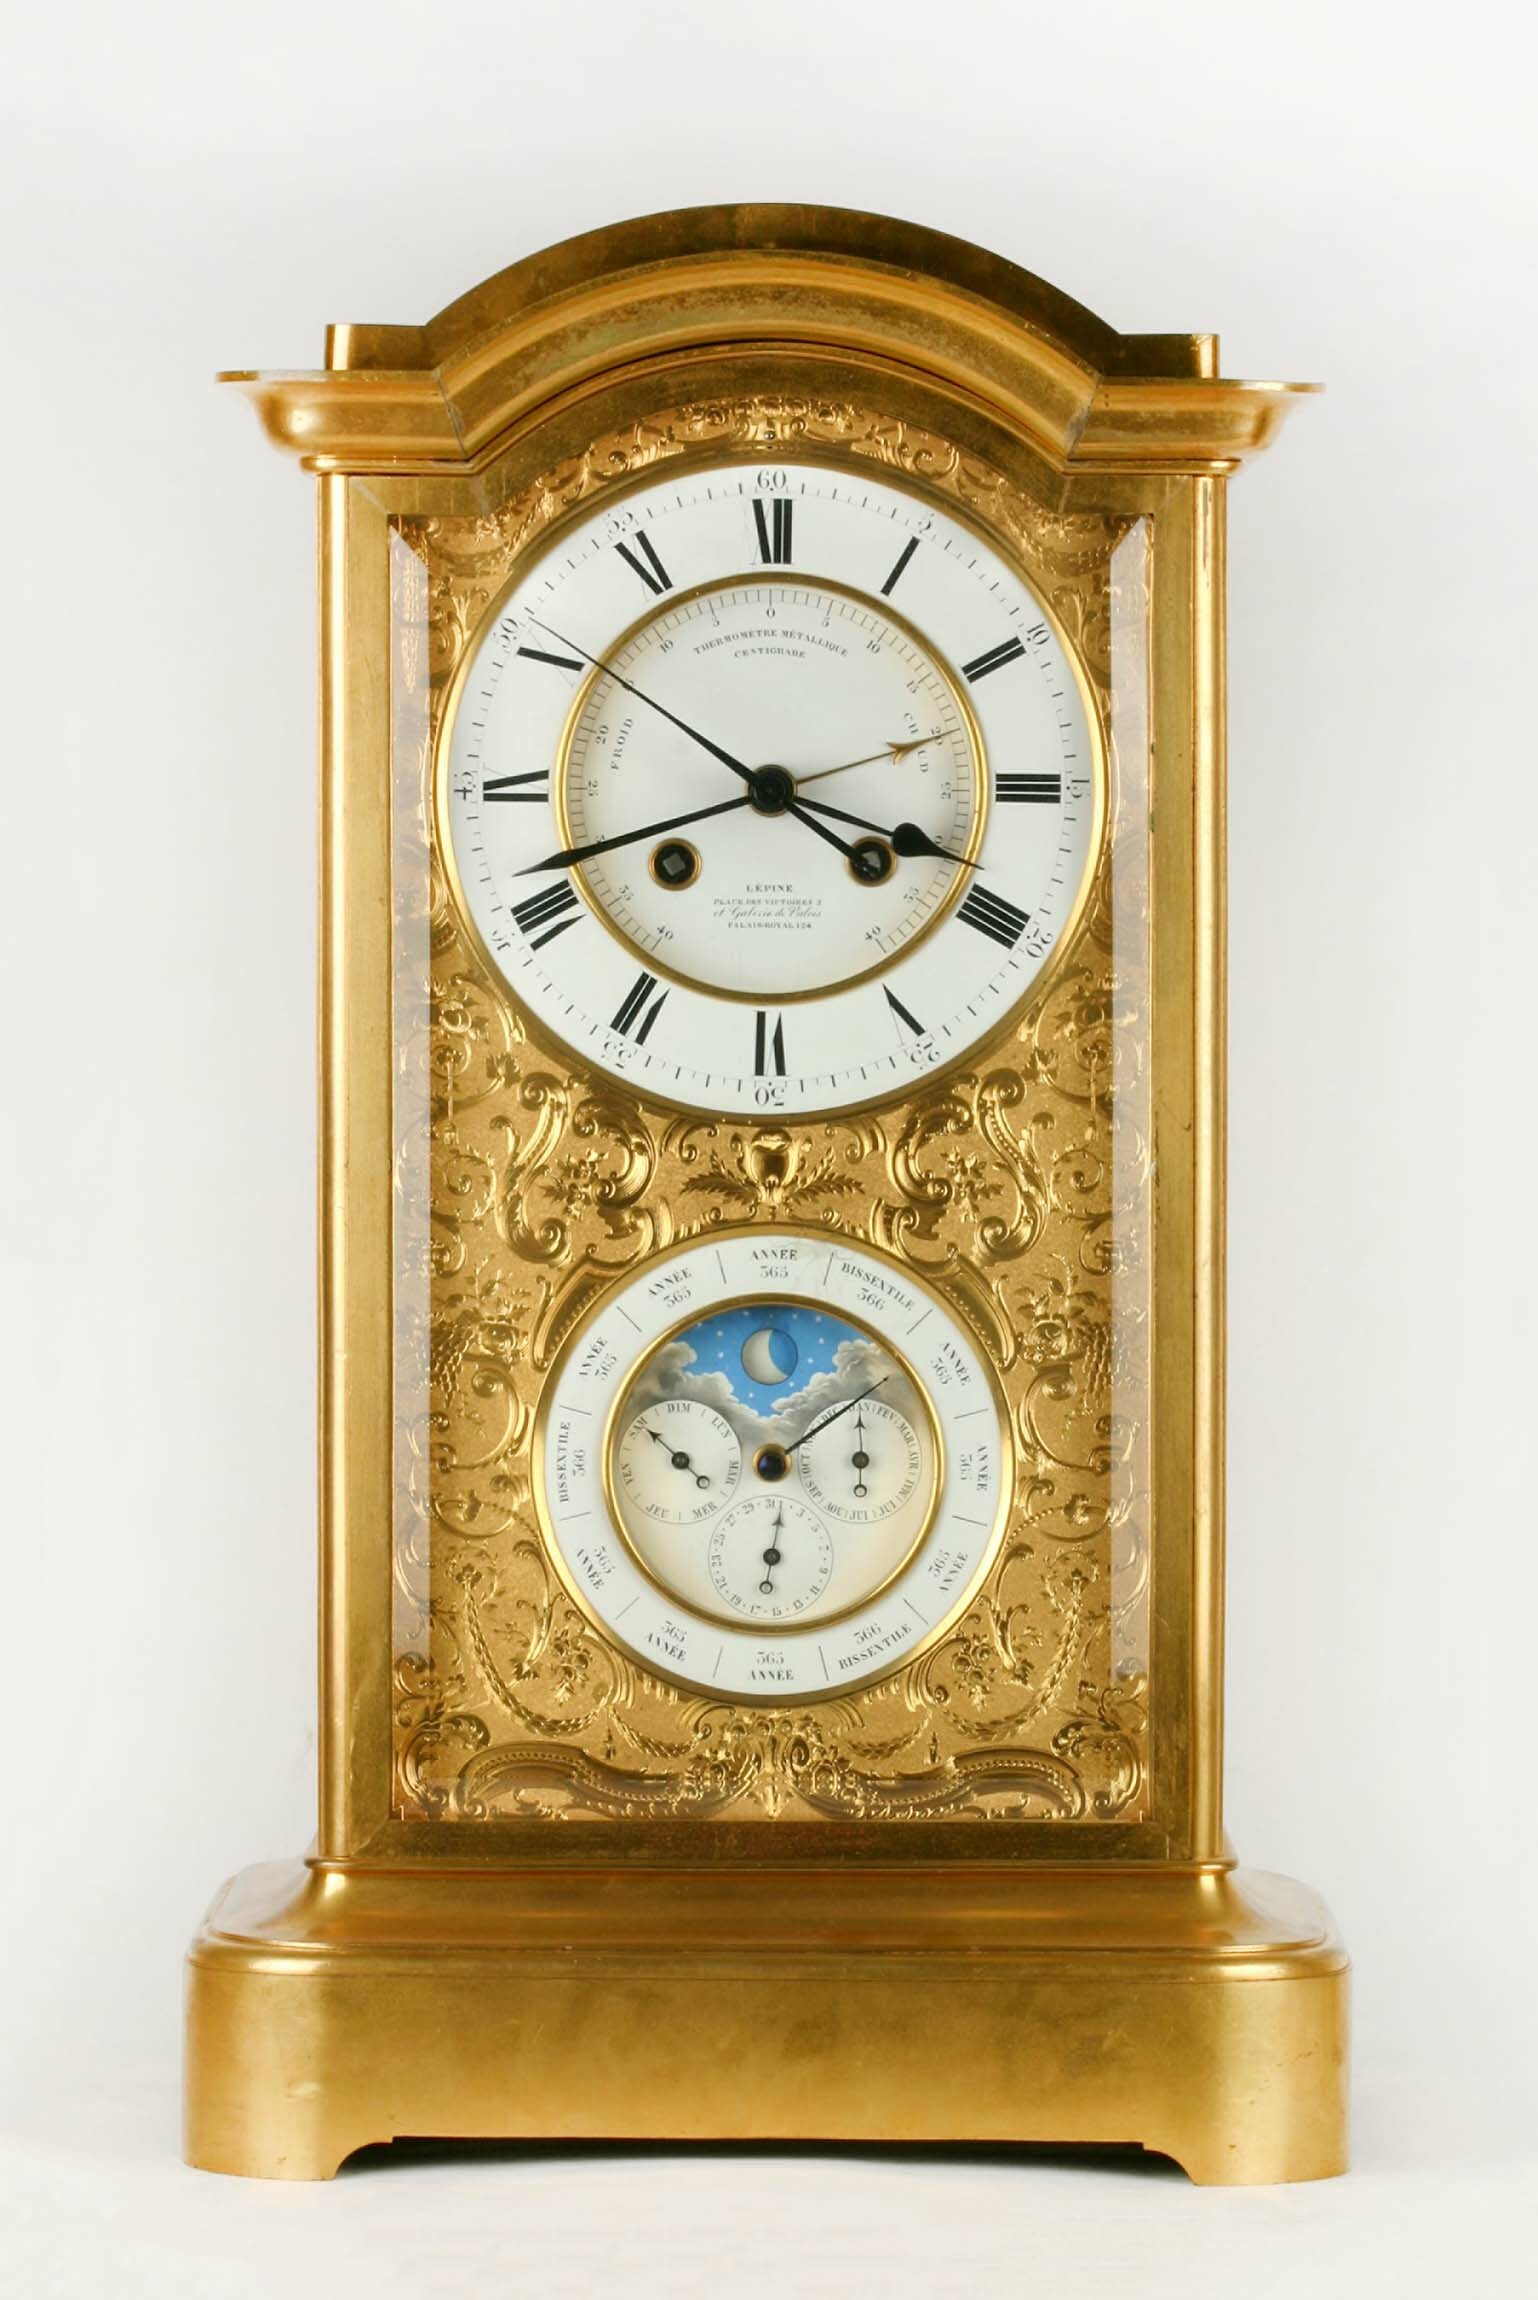 Tischuhr, Lépine, Paris, um 1850 (Deutsches Uhrenmuseum CC BY-SA)